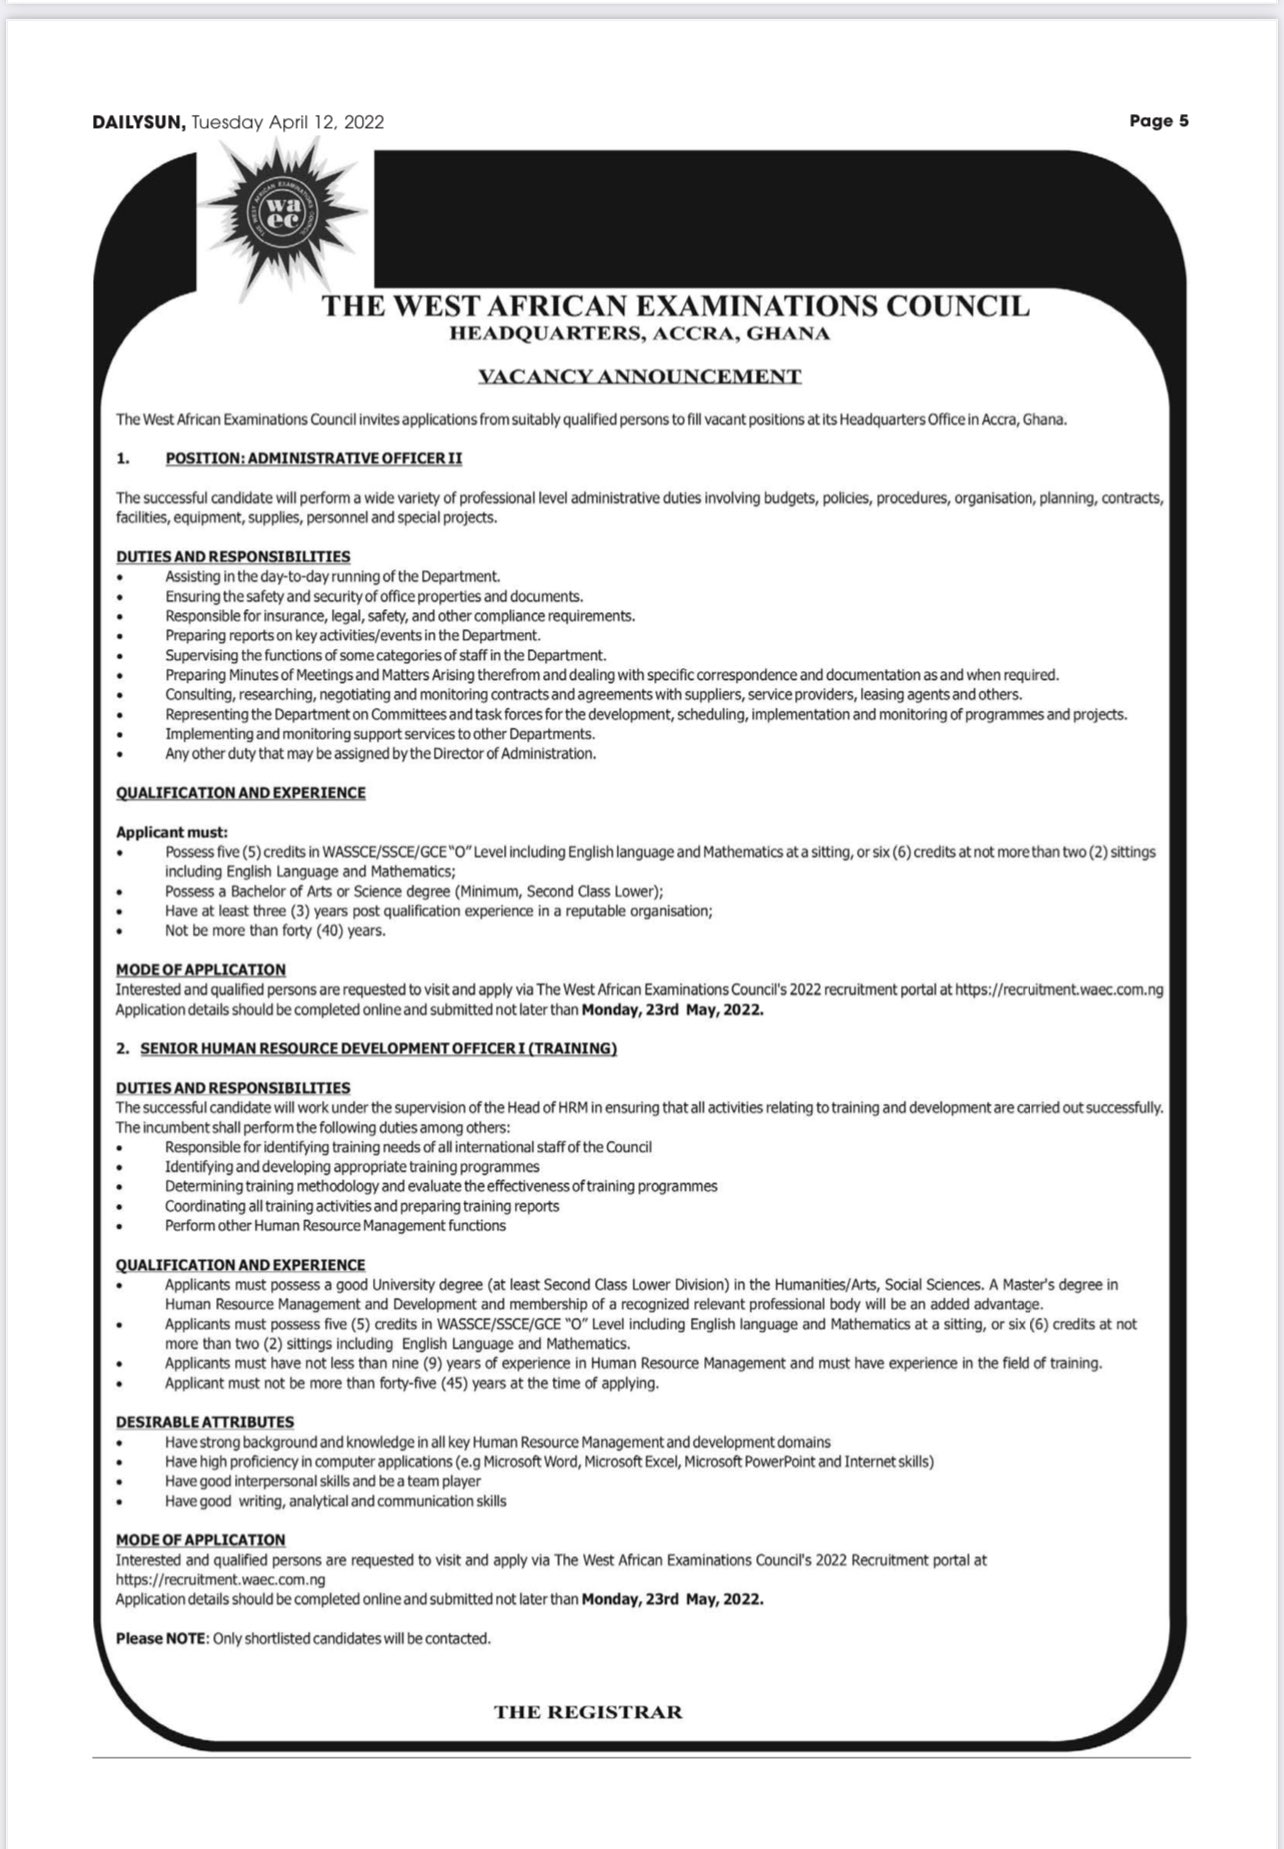 WAEC Ghana 2022 Job Recruitment Vacancies | 2 Positions